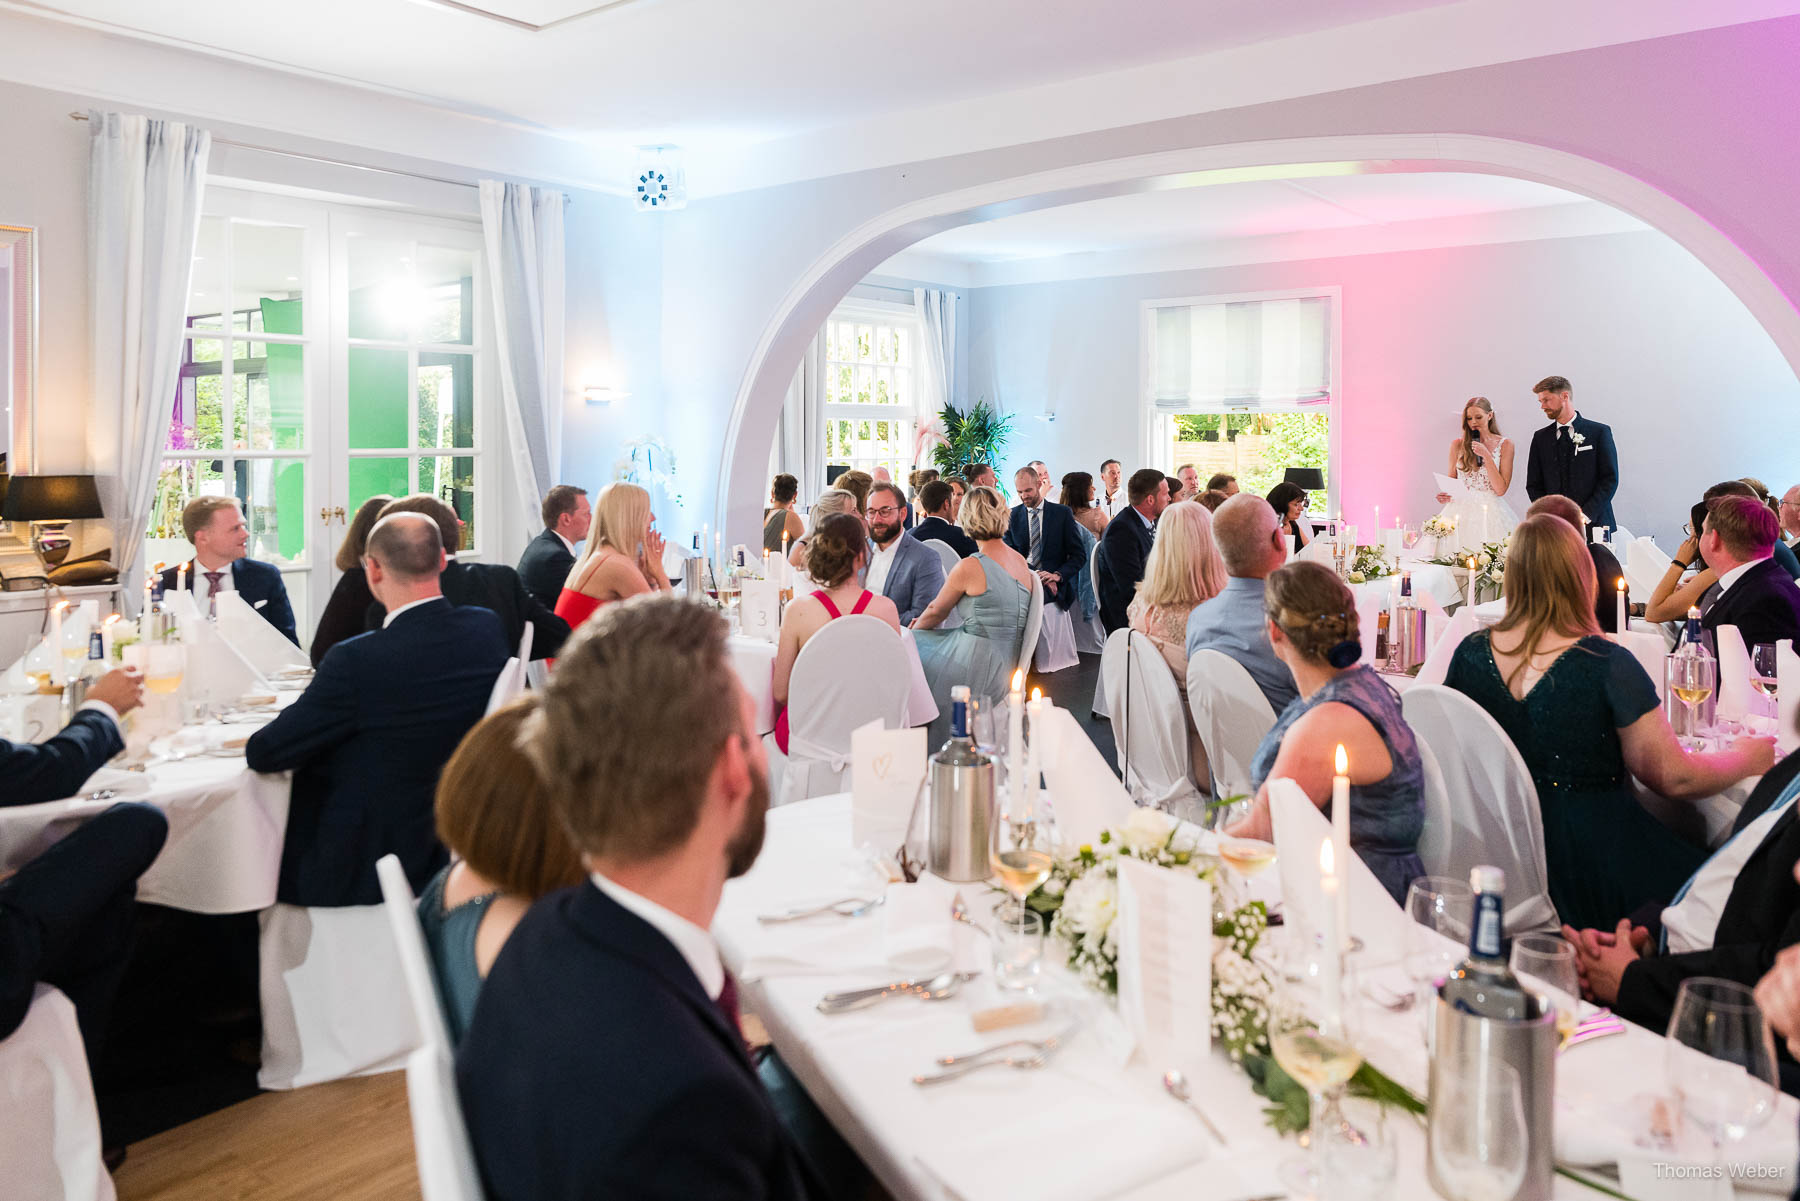 Hochzeitsessen im Landhaus Etzhorn Oldenburg, Hochzeitsfotograf Thomas Weber aus Oldenburg